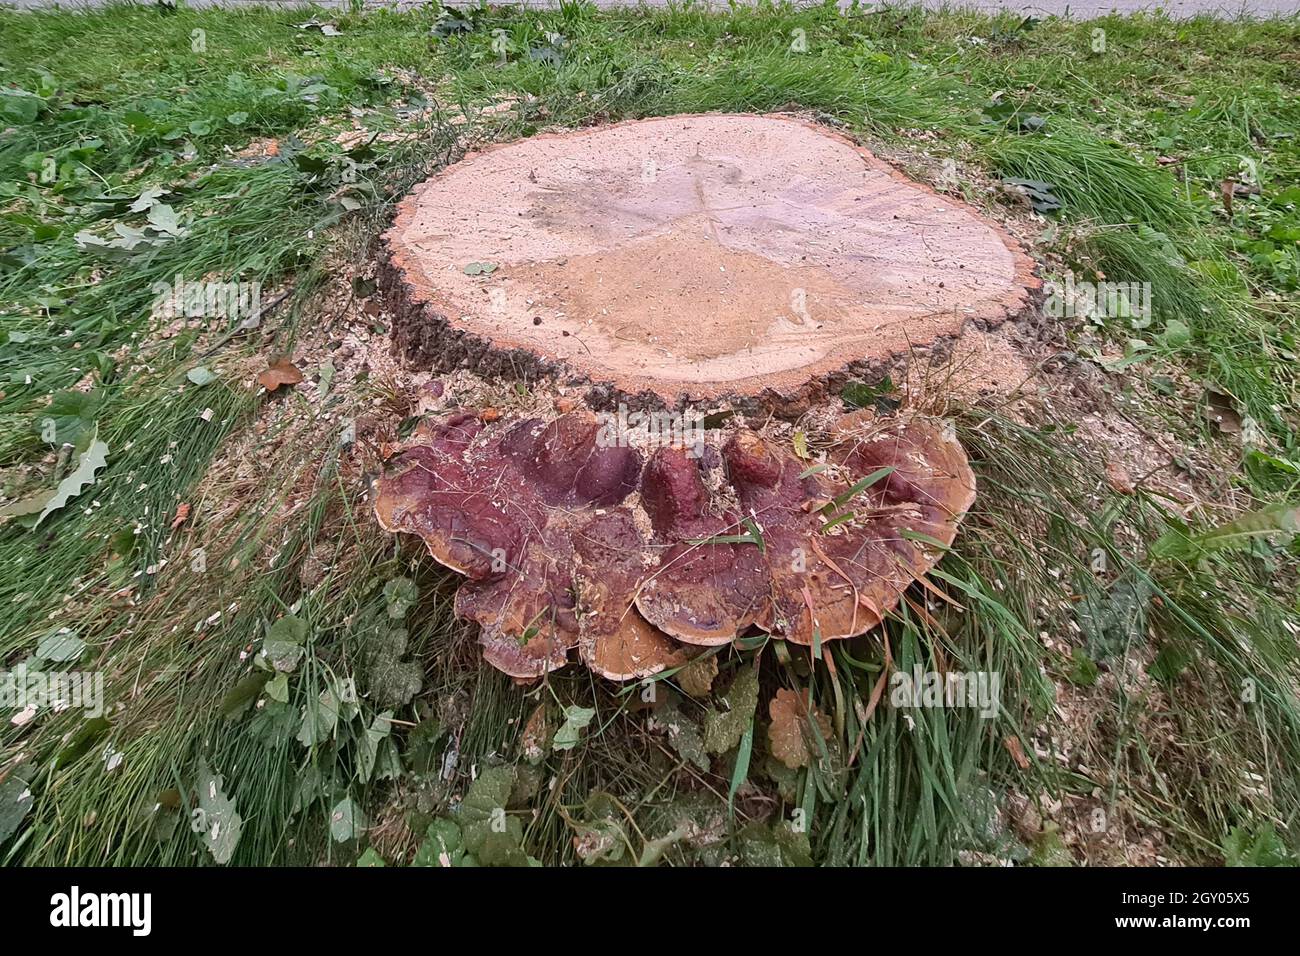 Hongo de la escuadra (Ganoderma resinaceum), creciendo a los pies de un tronco de roble, la razón, por qué el árbol fue talado, Alemania Foto de stock